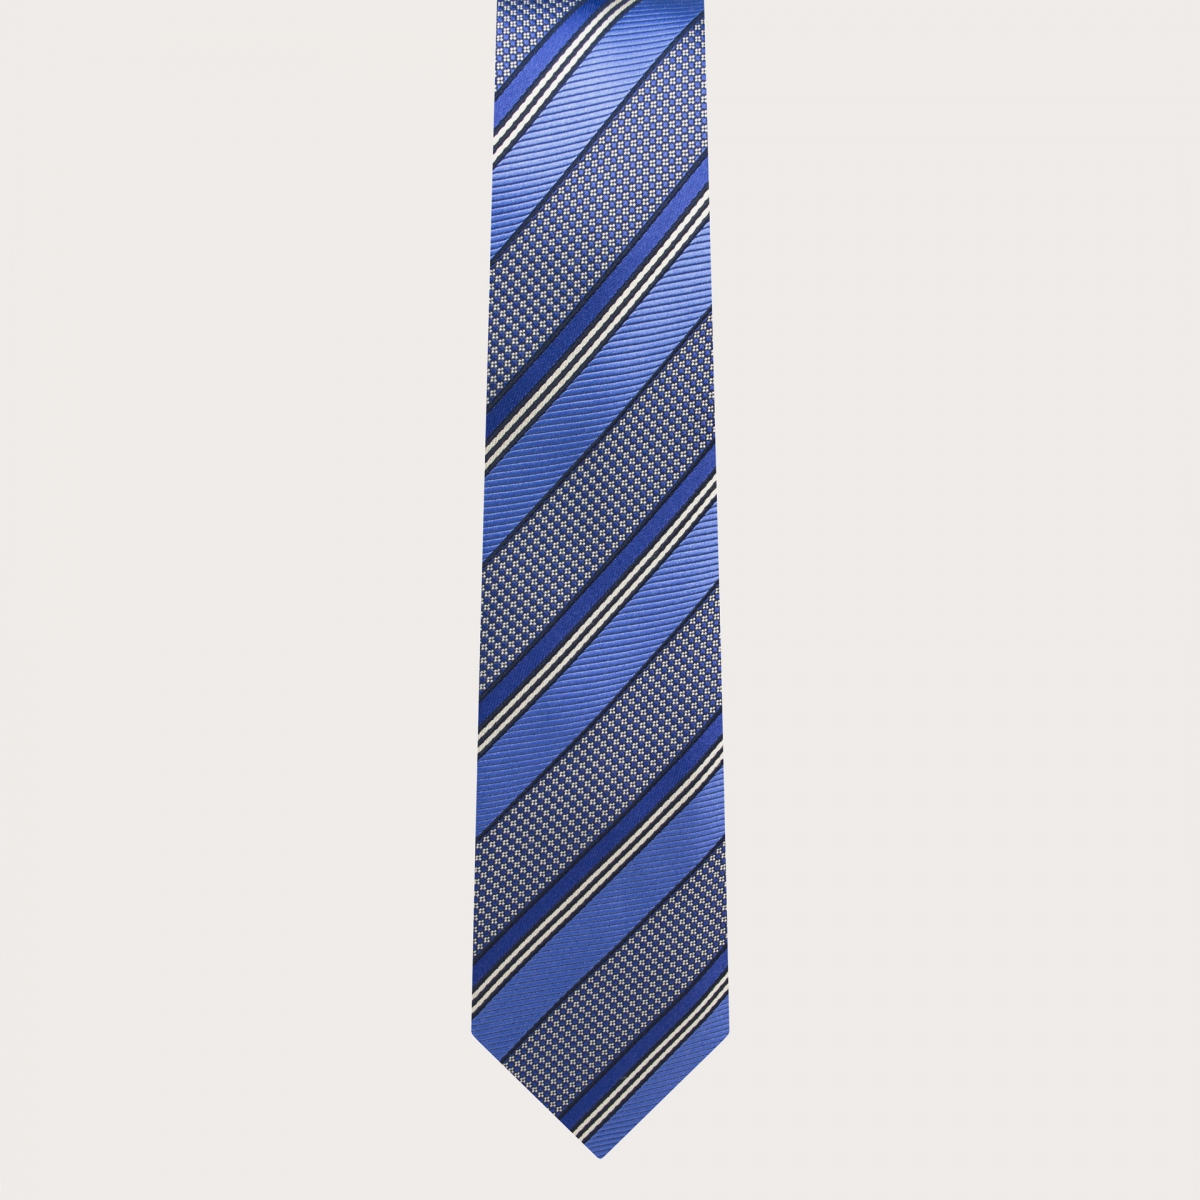 Cravate de cérémonie étroite en soie jacquard à motif régimentaire bleu